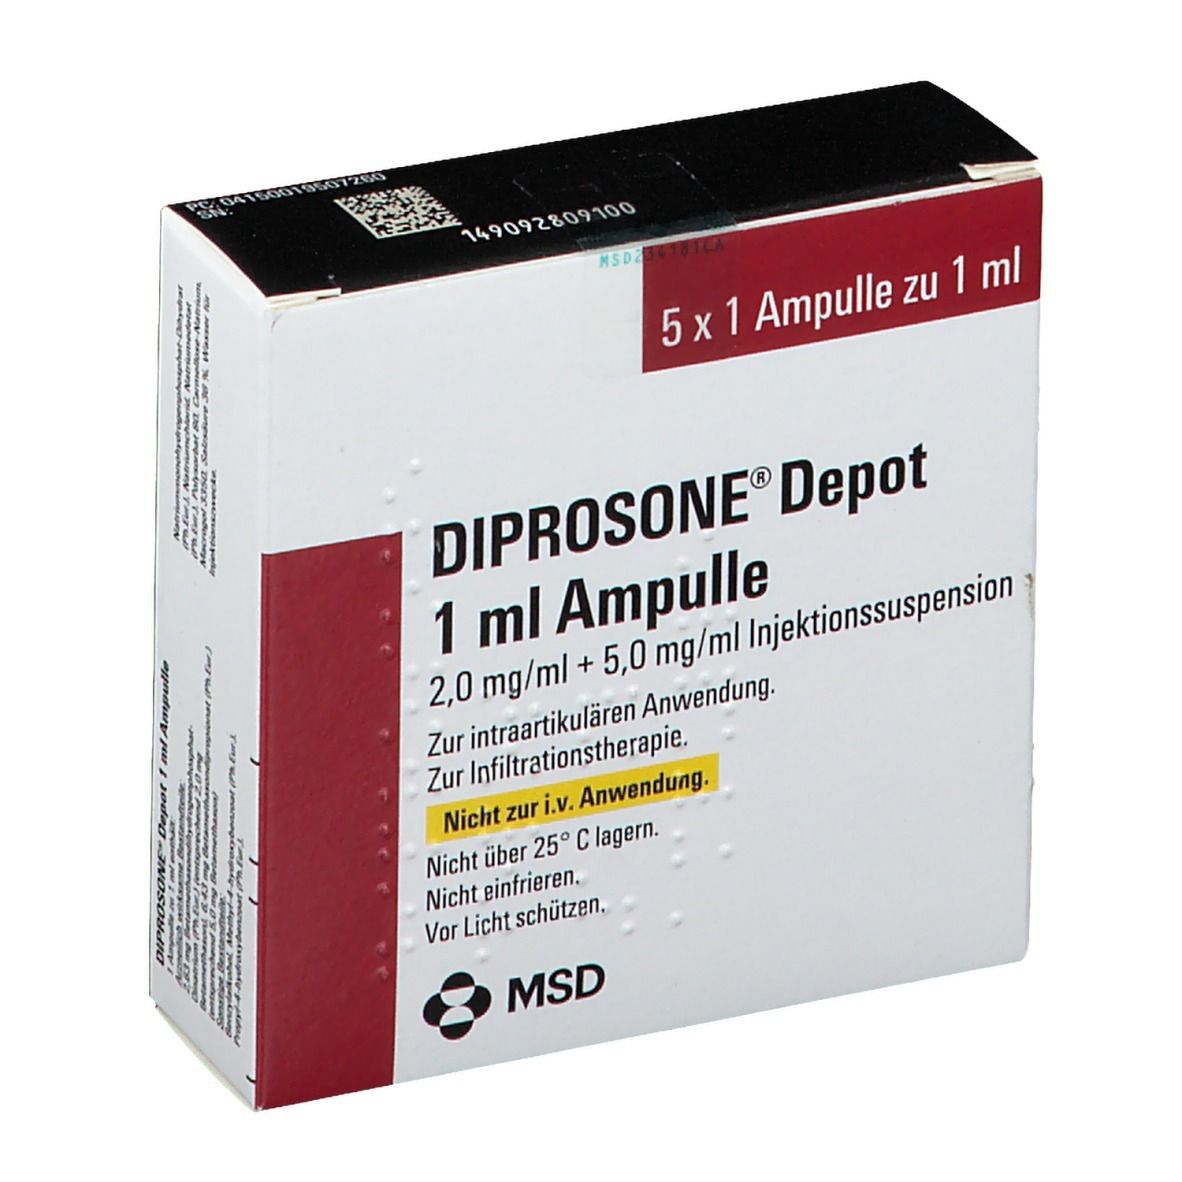 DIPROSONE® Depot 1 ml Ampulle